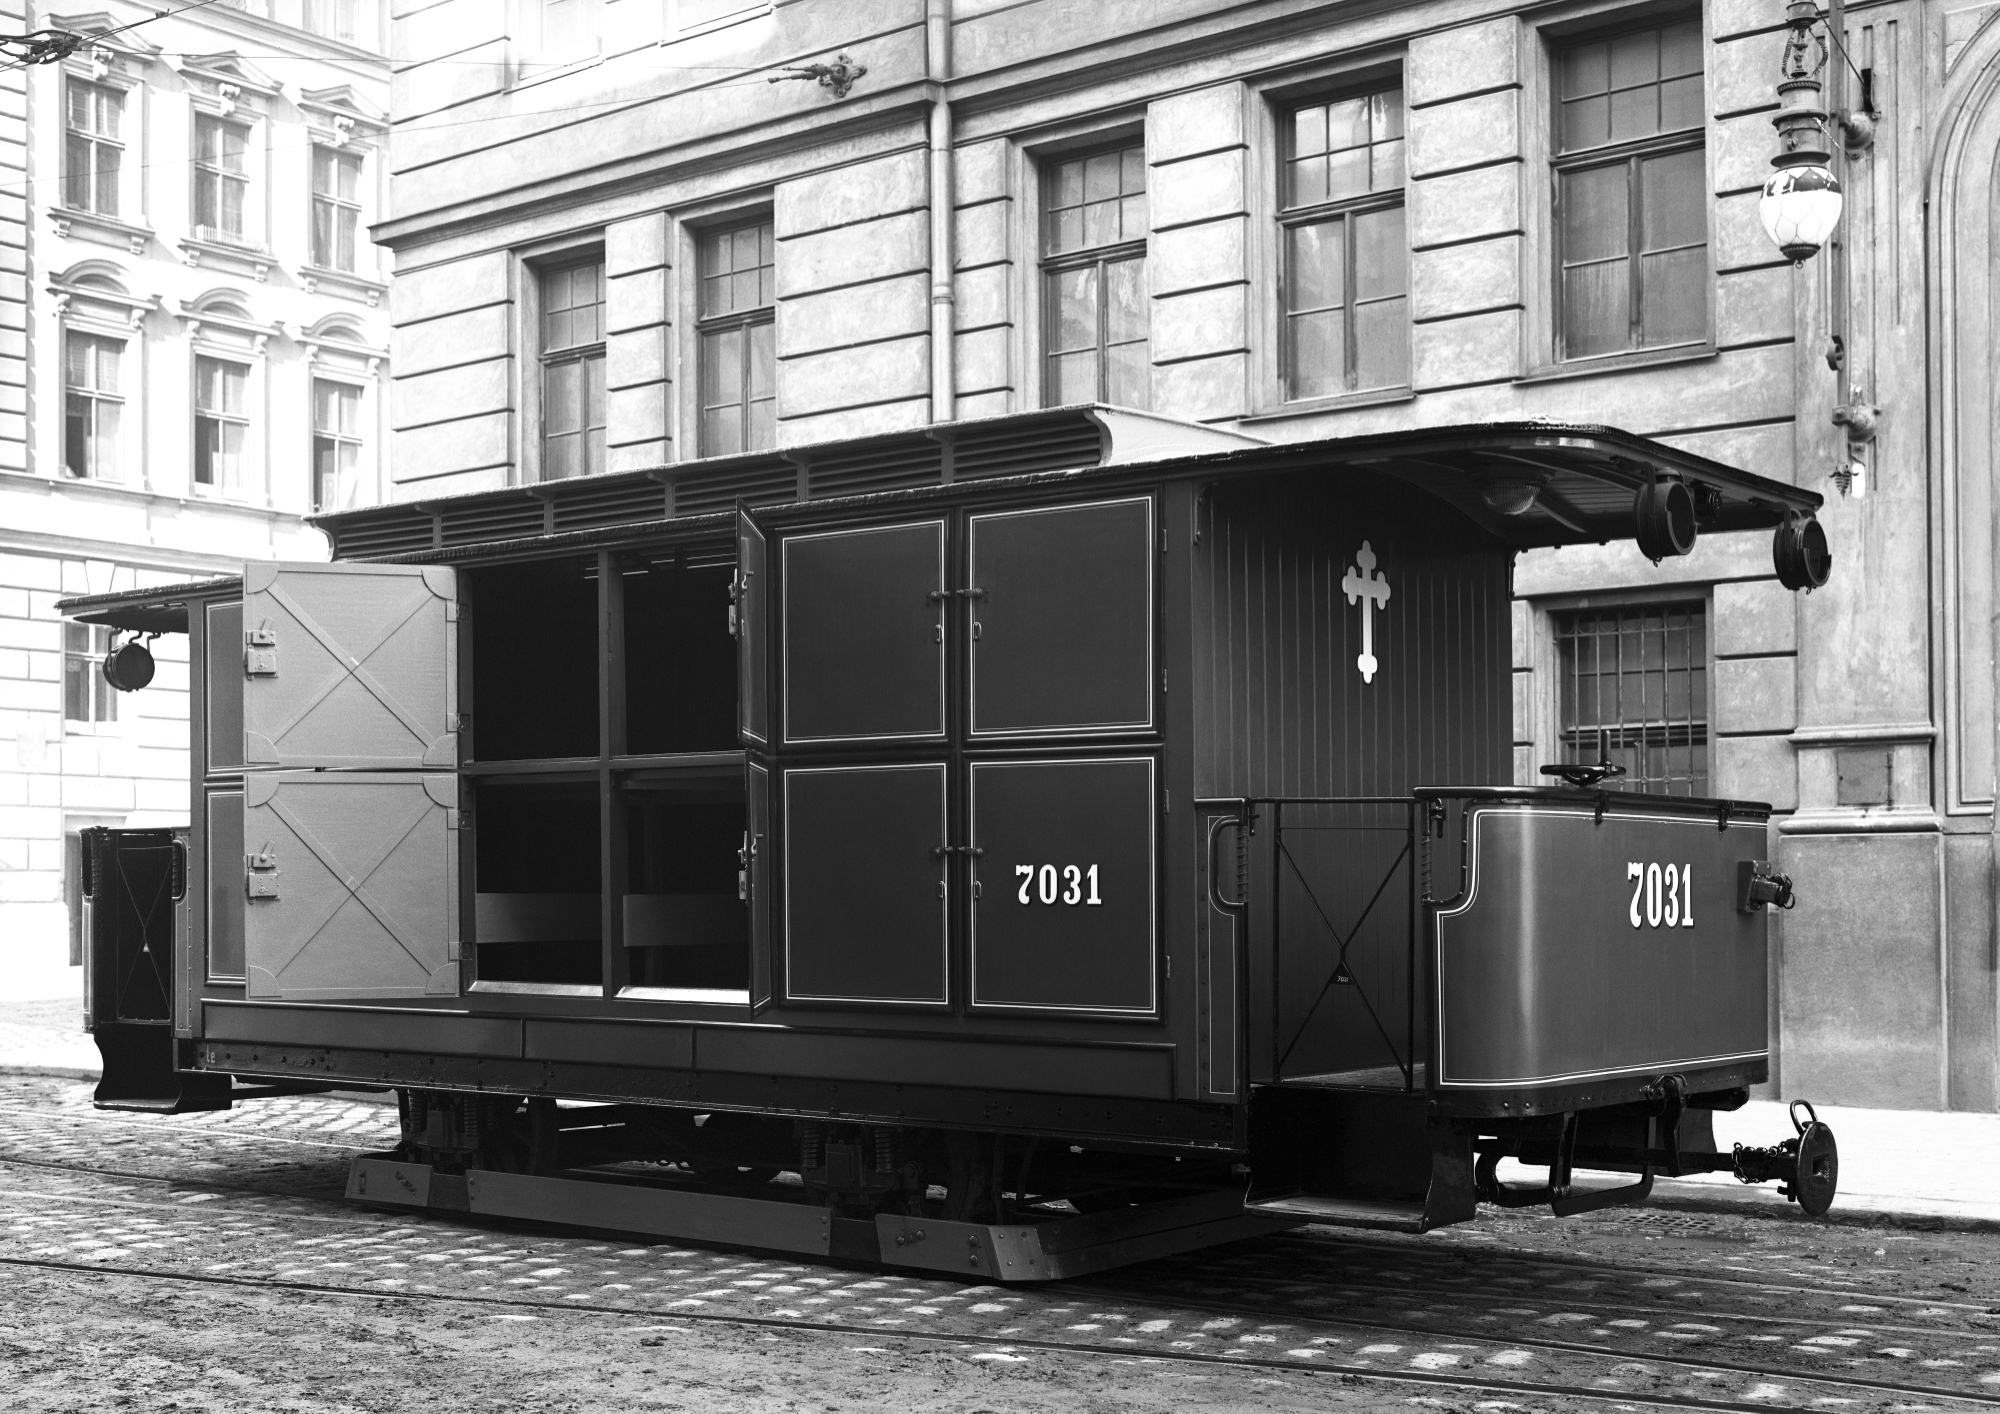 Arbeitswagen 7031, der Type le (Leichenwagen) in der Siebeneichengasse im Jahr 1918. Ein Modell dieses Leichenwagens ist im Bestattungsmuseum zu besichtigen.